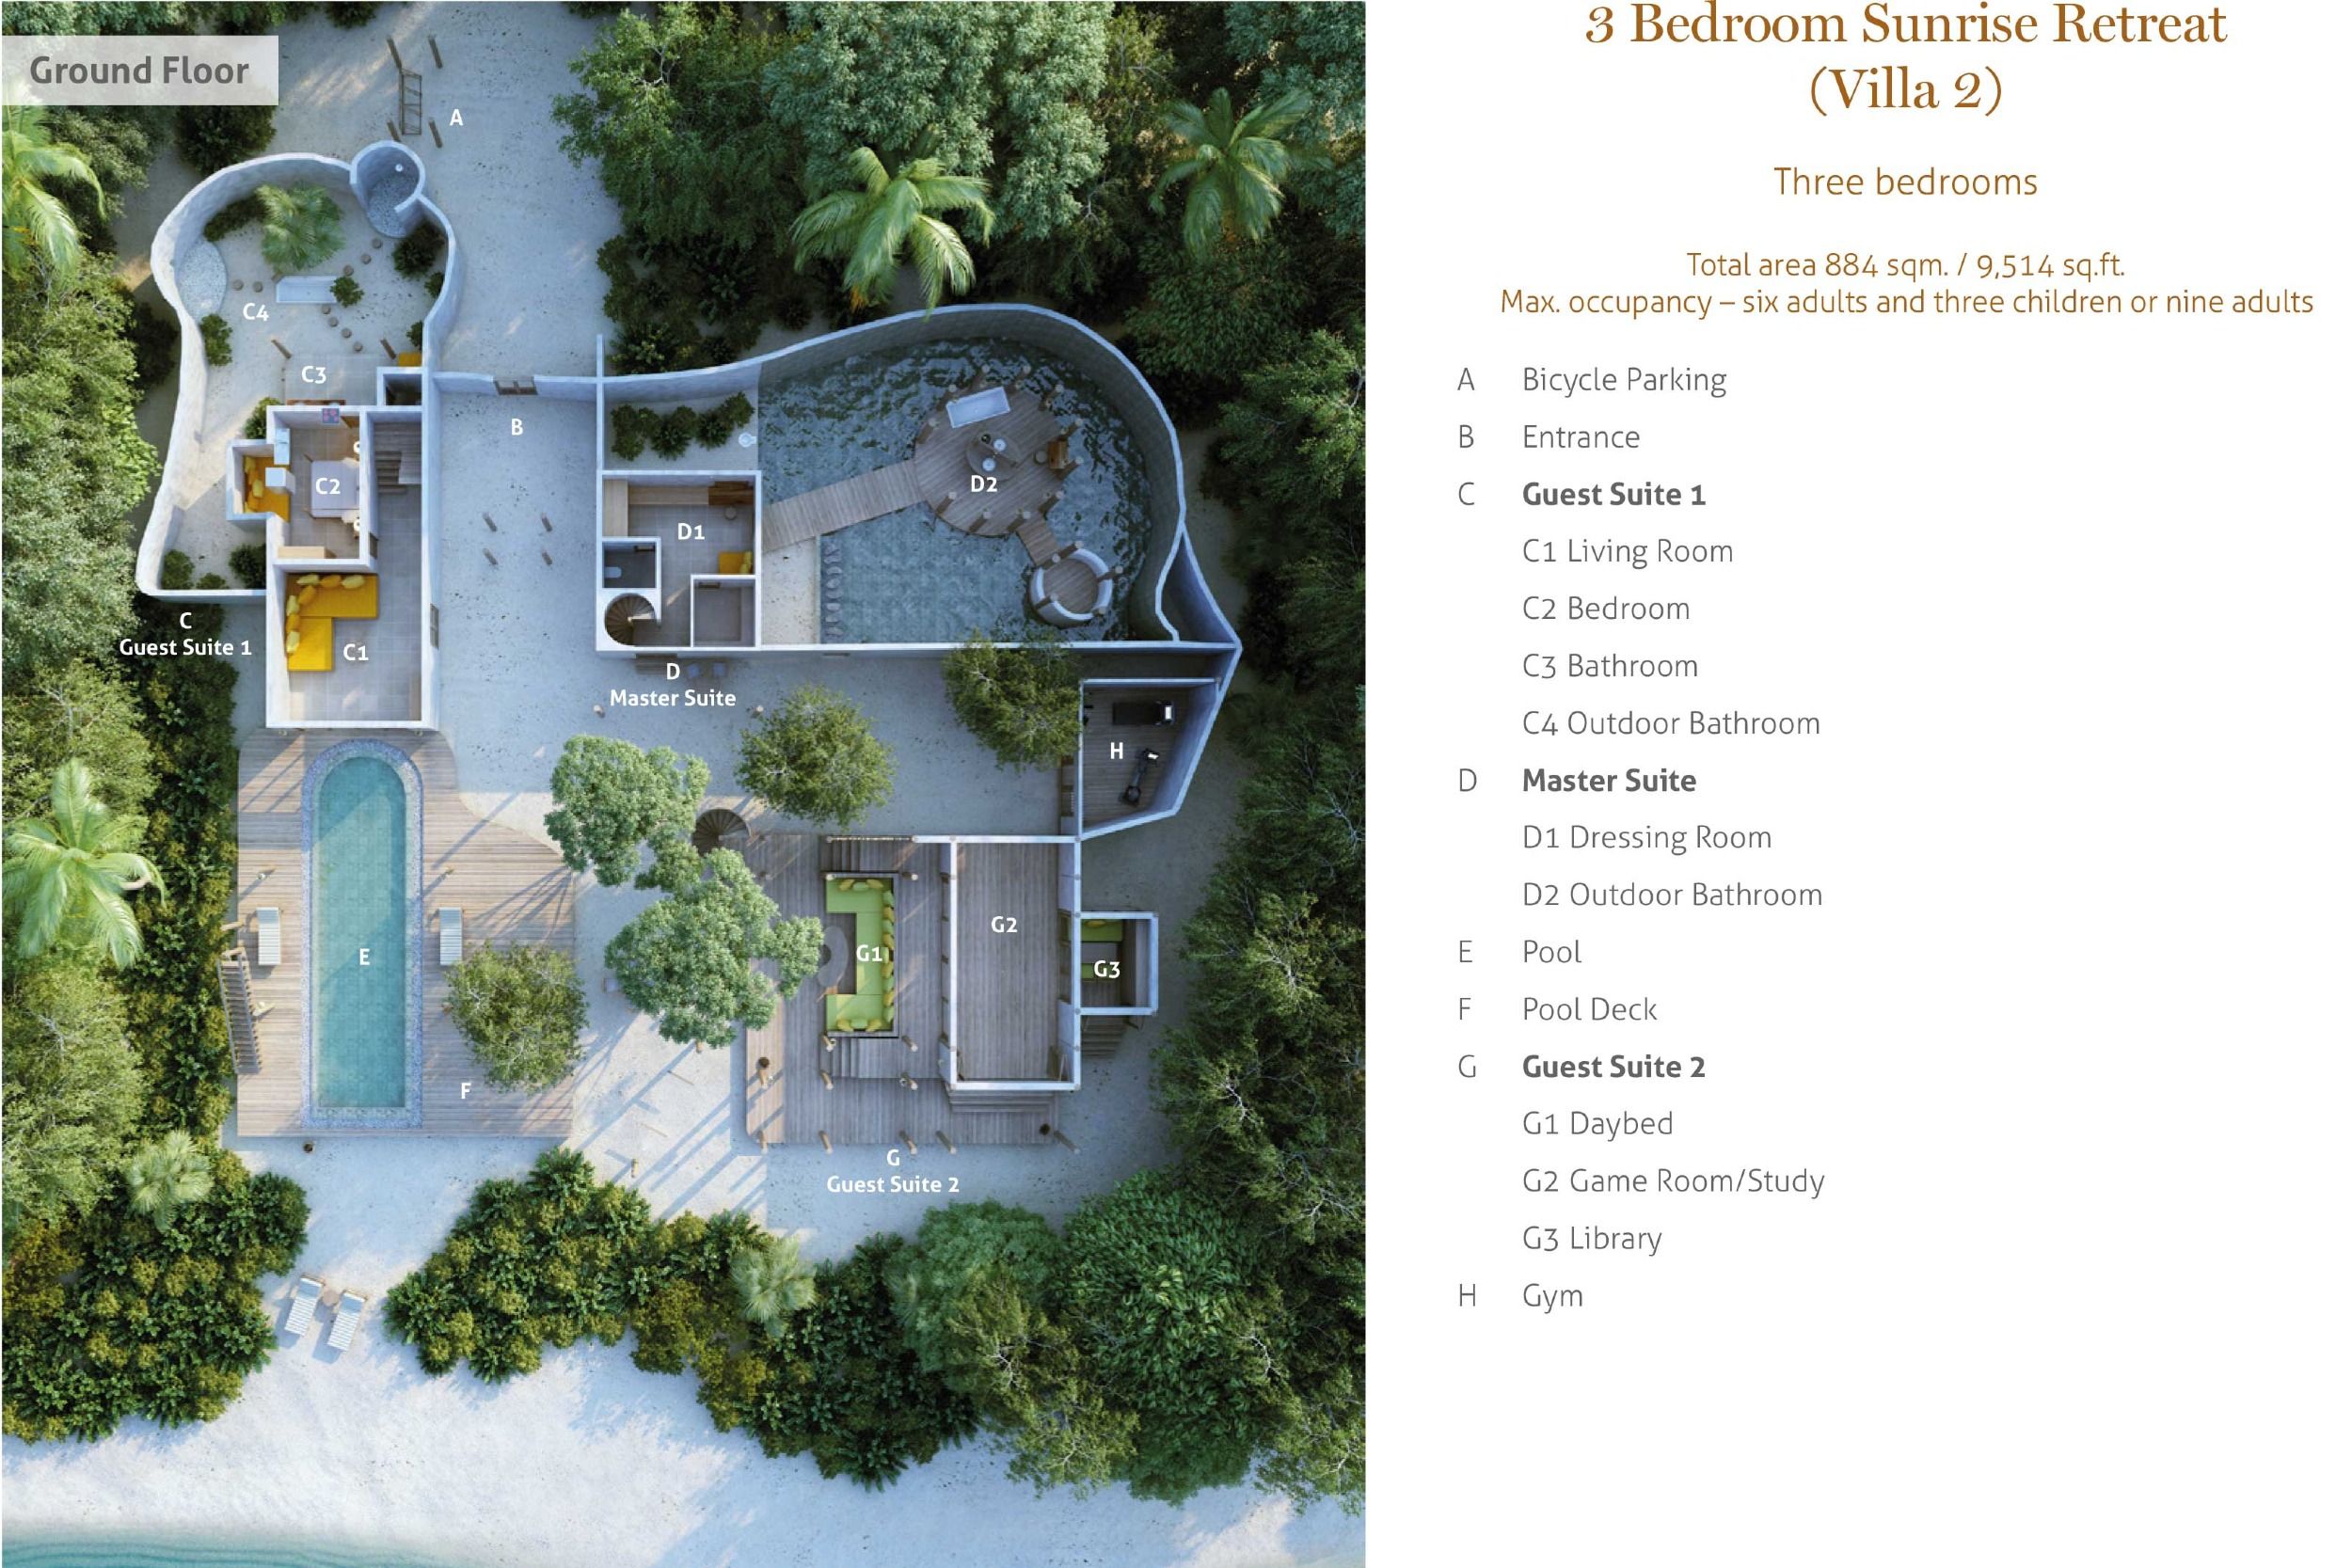 Villa 02 - Sunrise Retreat with Pool - Three Bedroom